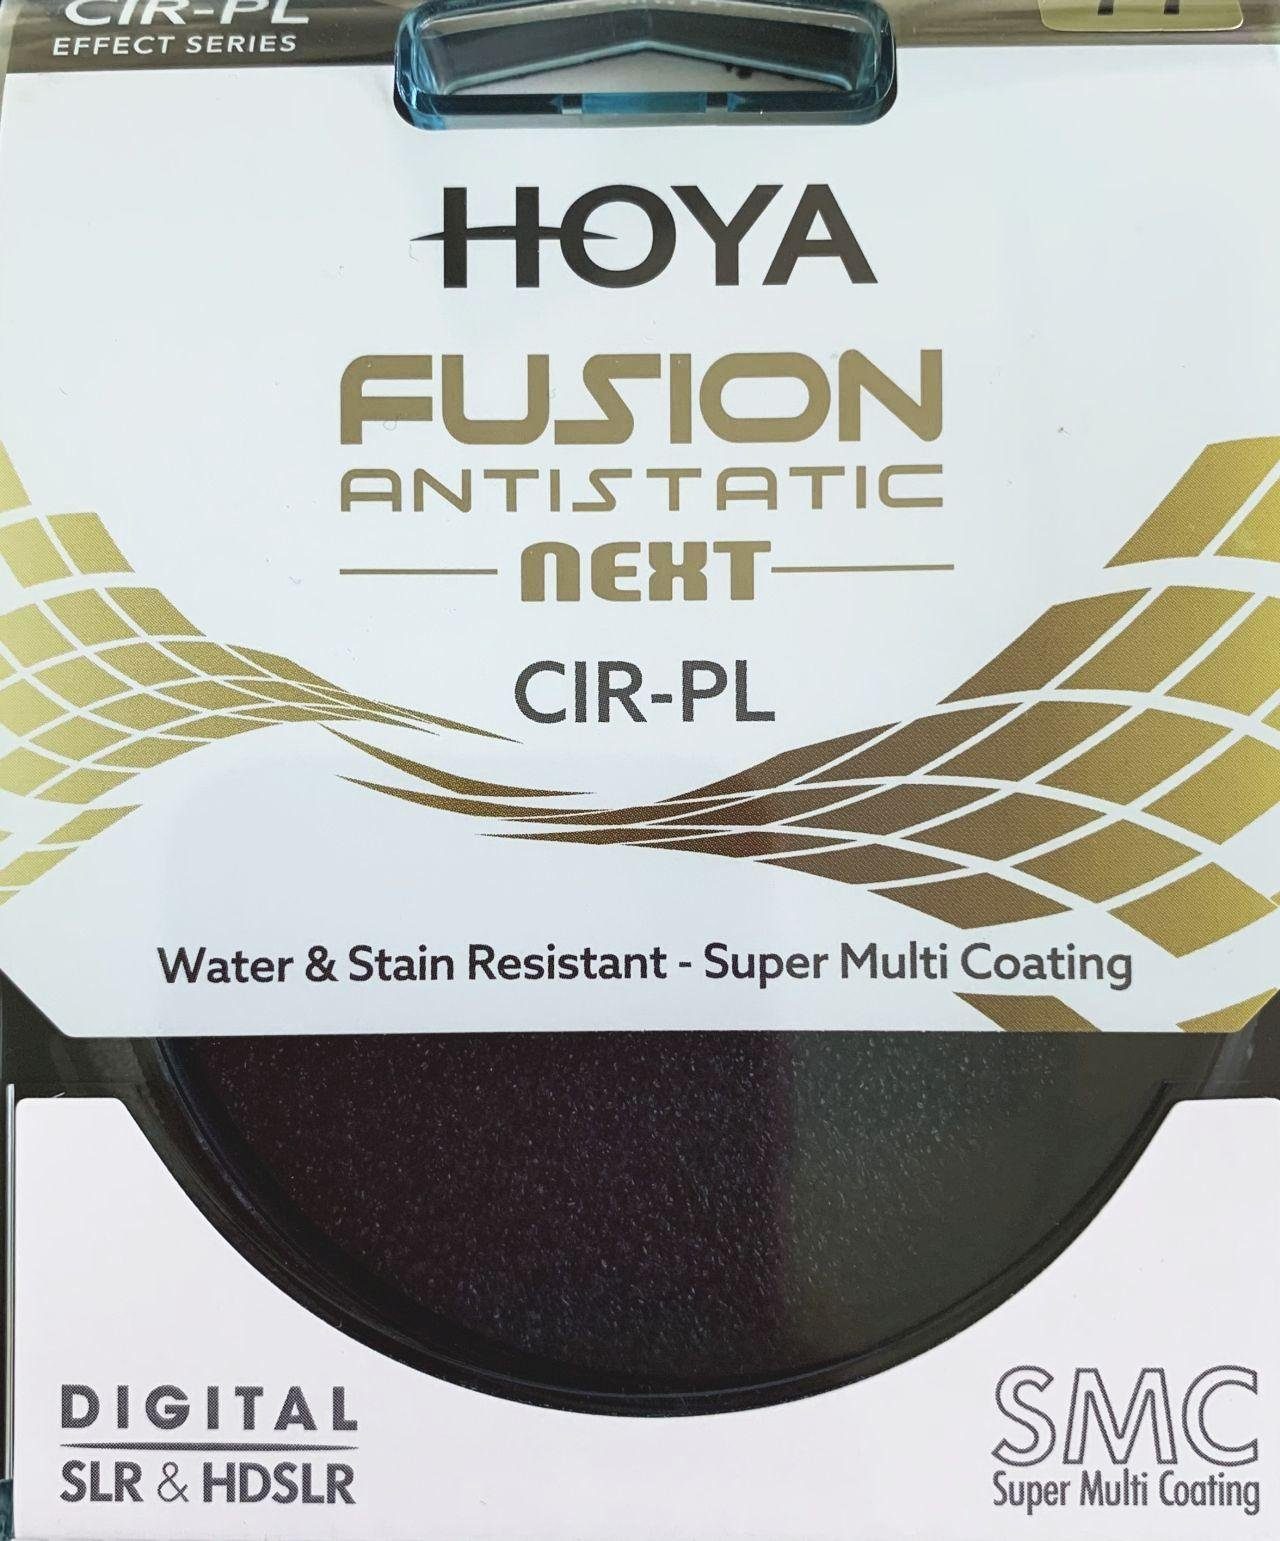 Circular Fusion Polfilter Objektivzubehör 82mm Hoya Antistatic Next